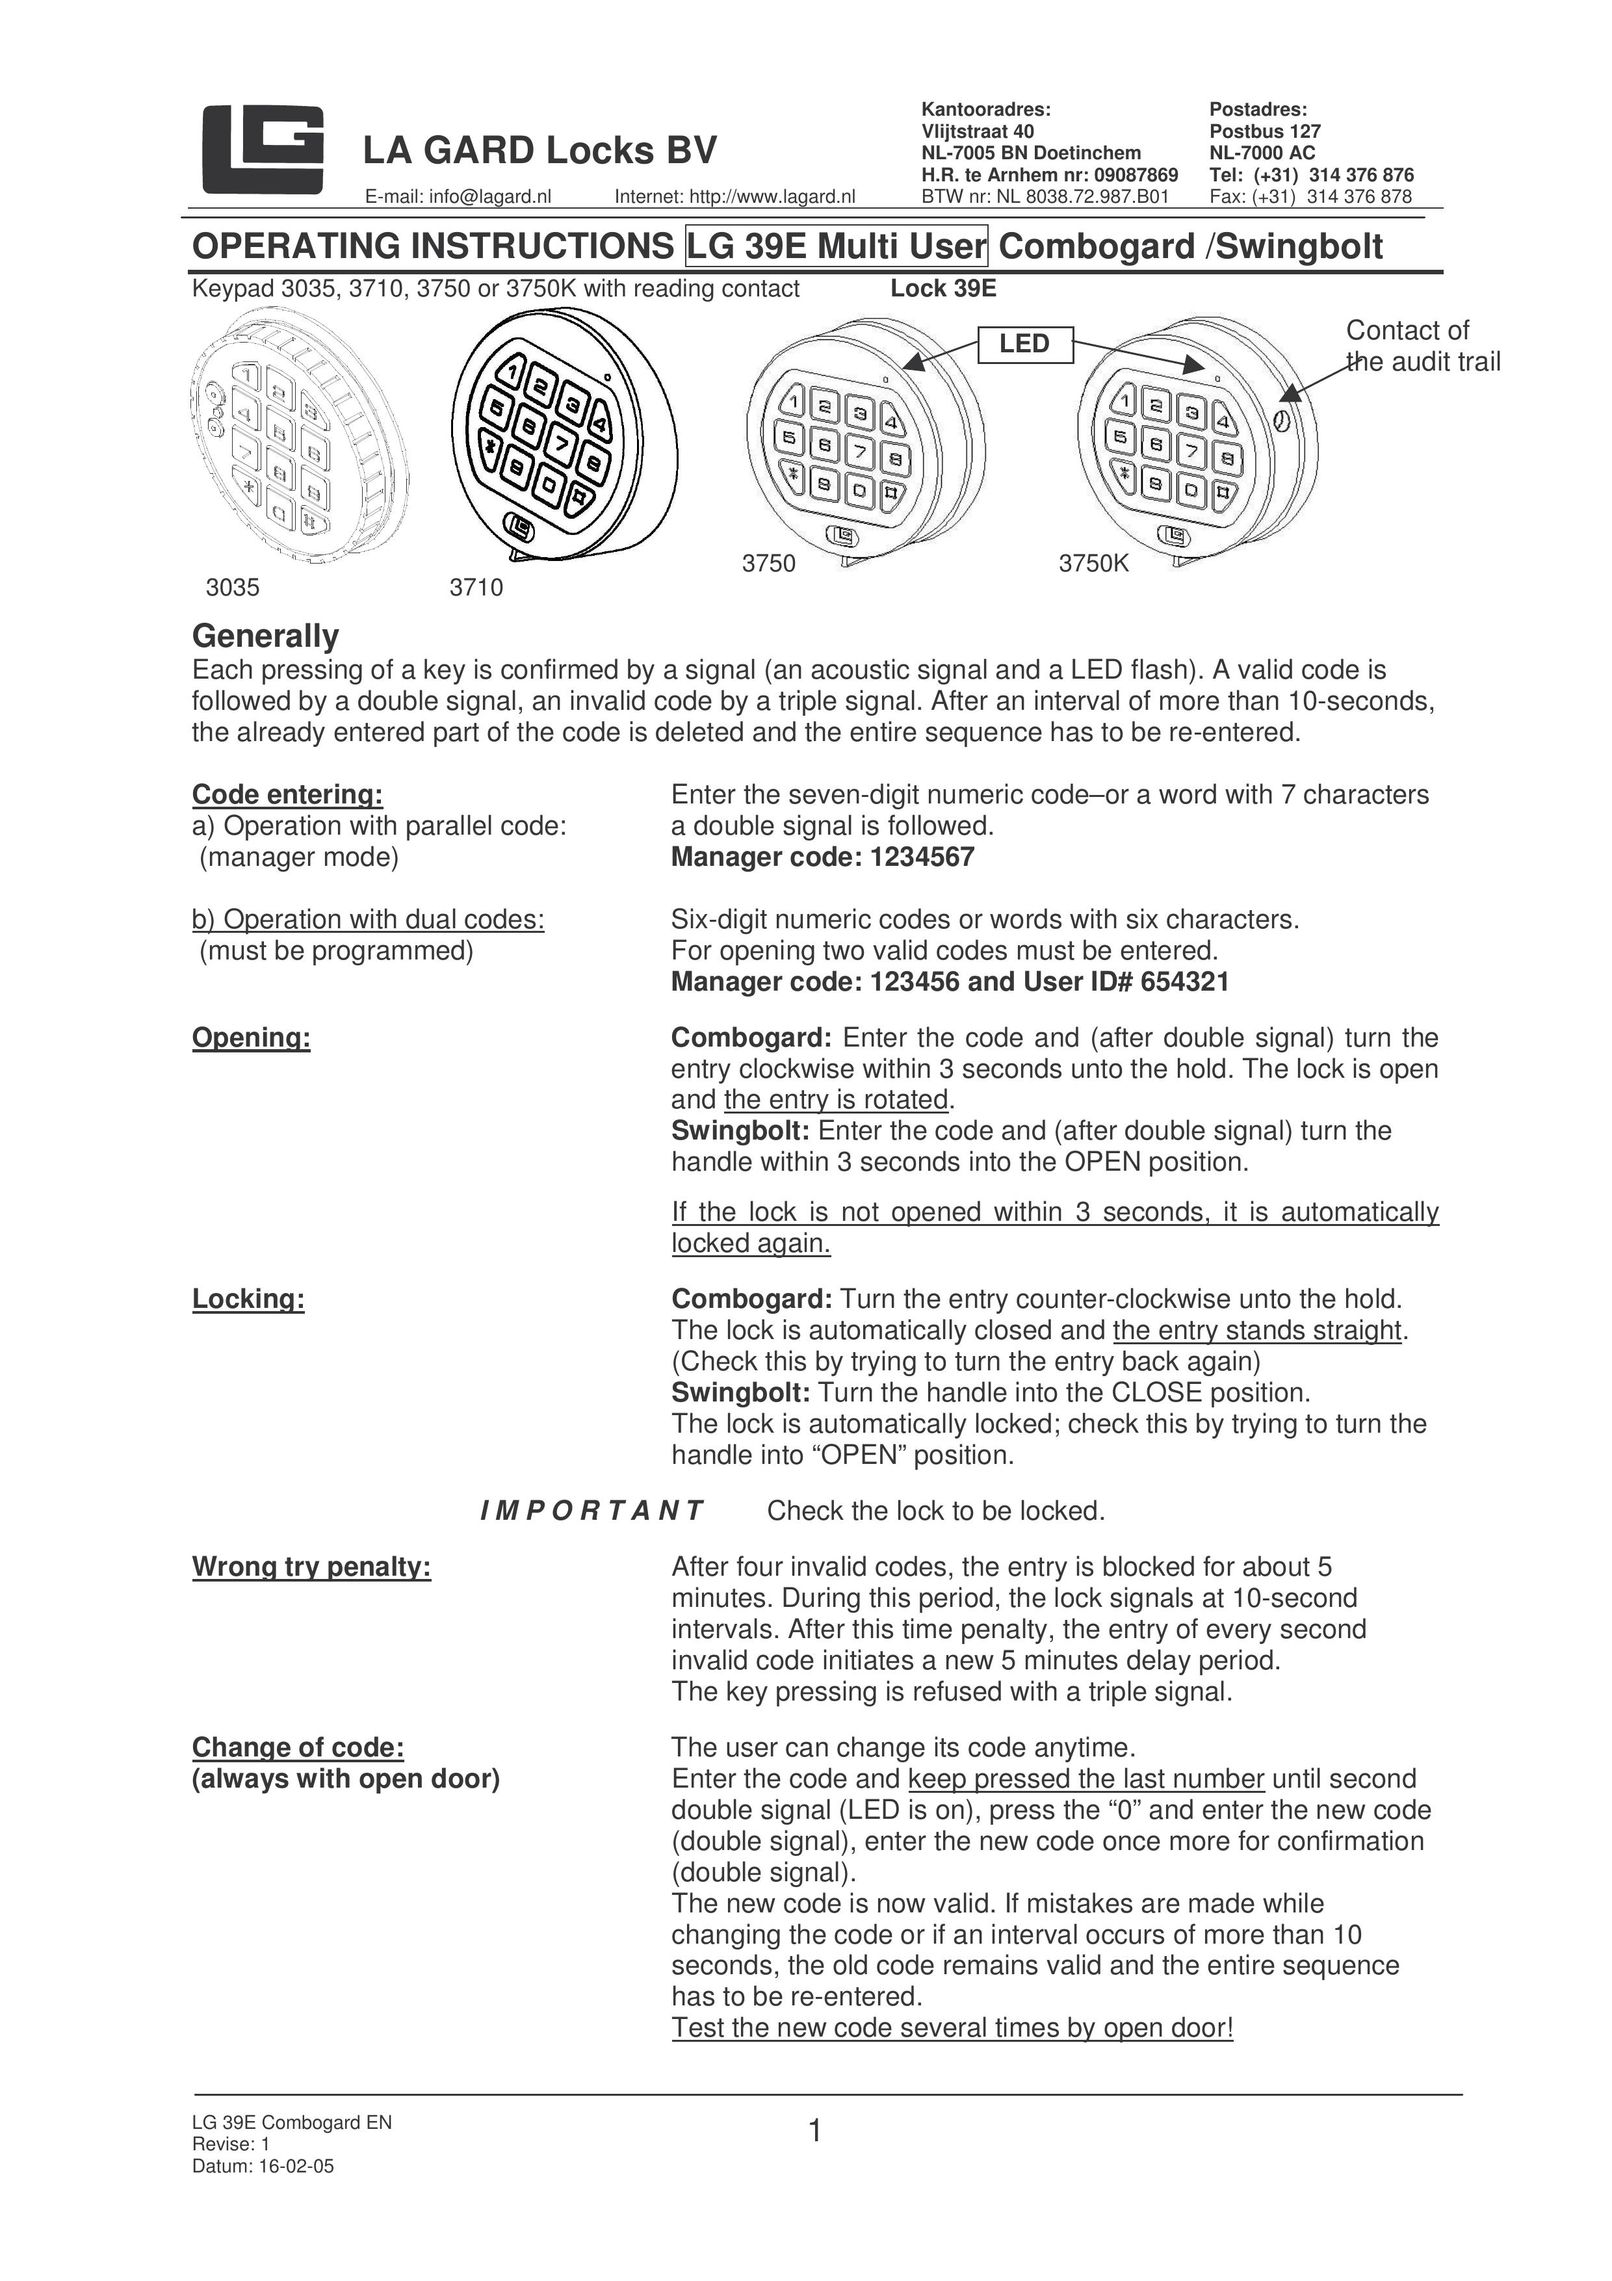 LG Electronics NL-7000 AC Door User Manual